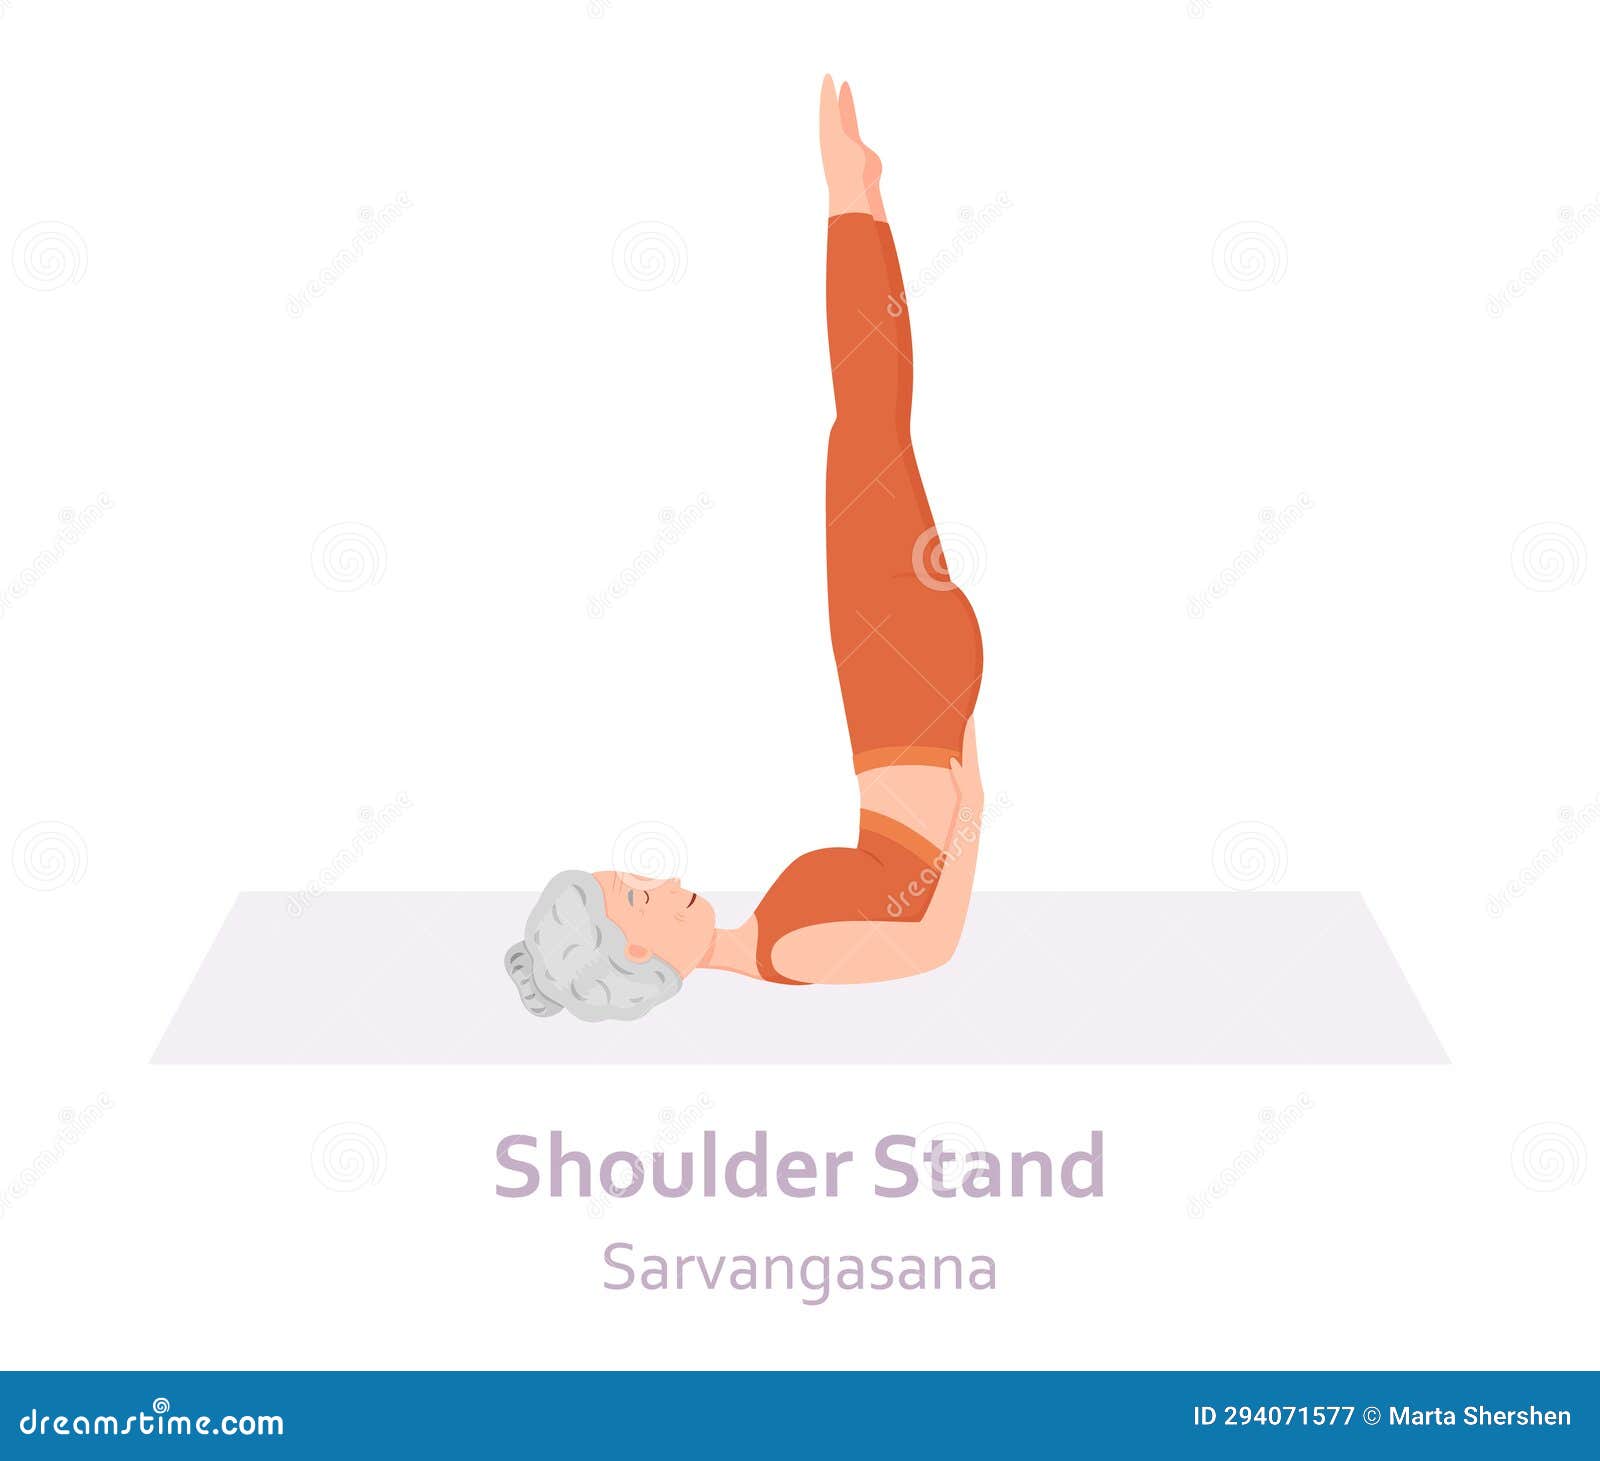 Shoulder Stand Yoga Pose Stock Illustrations – 152 Shoulder Stand